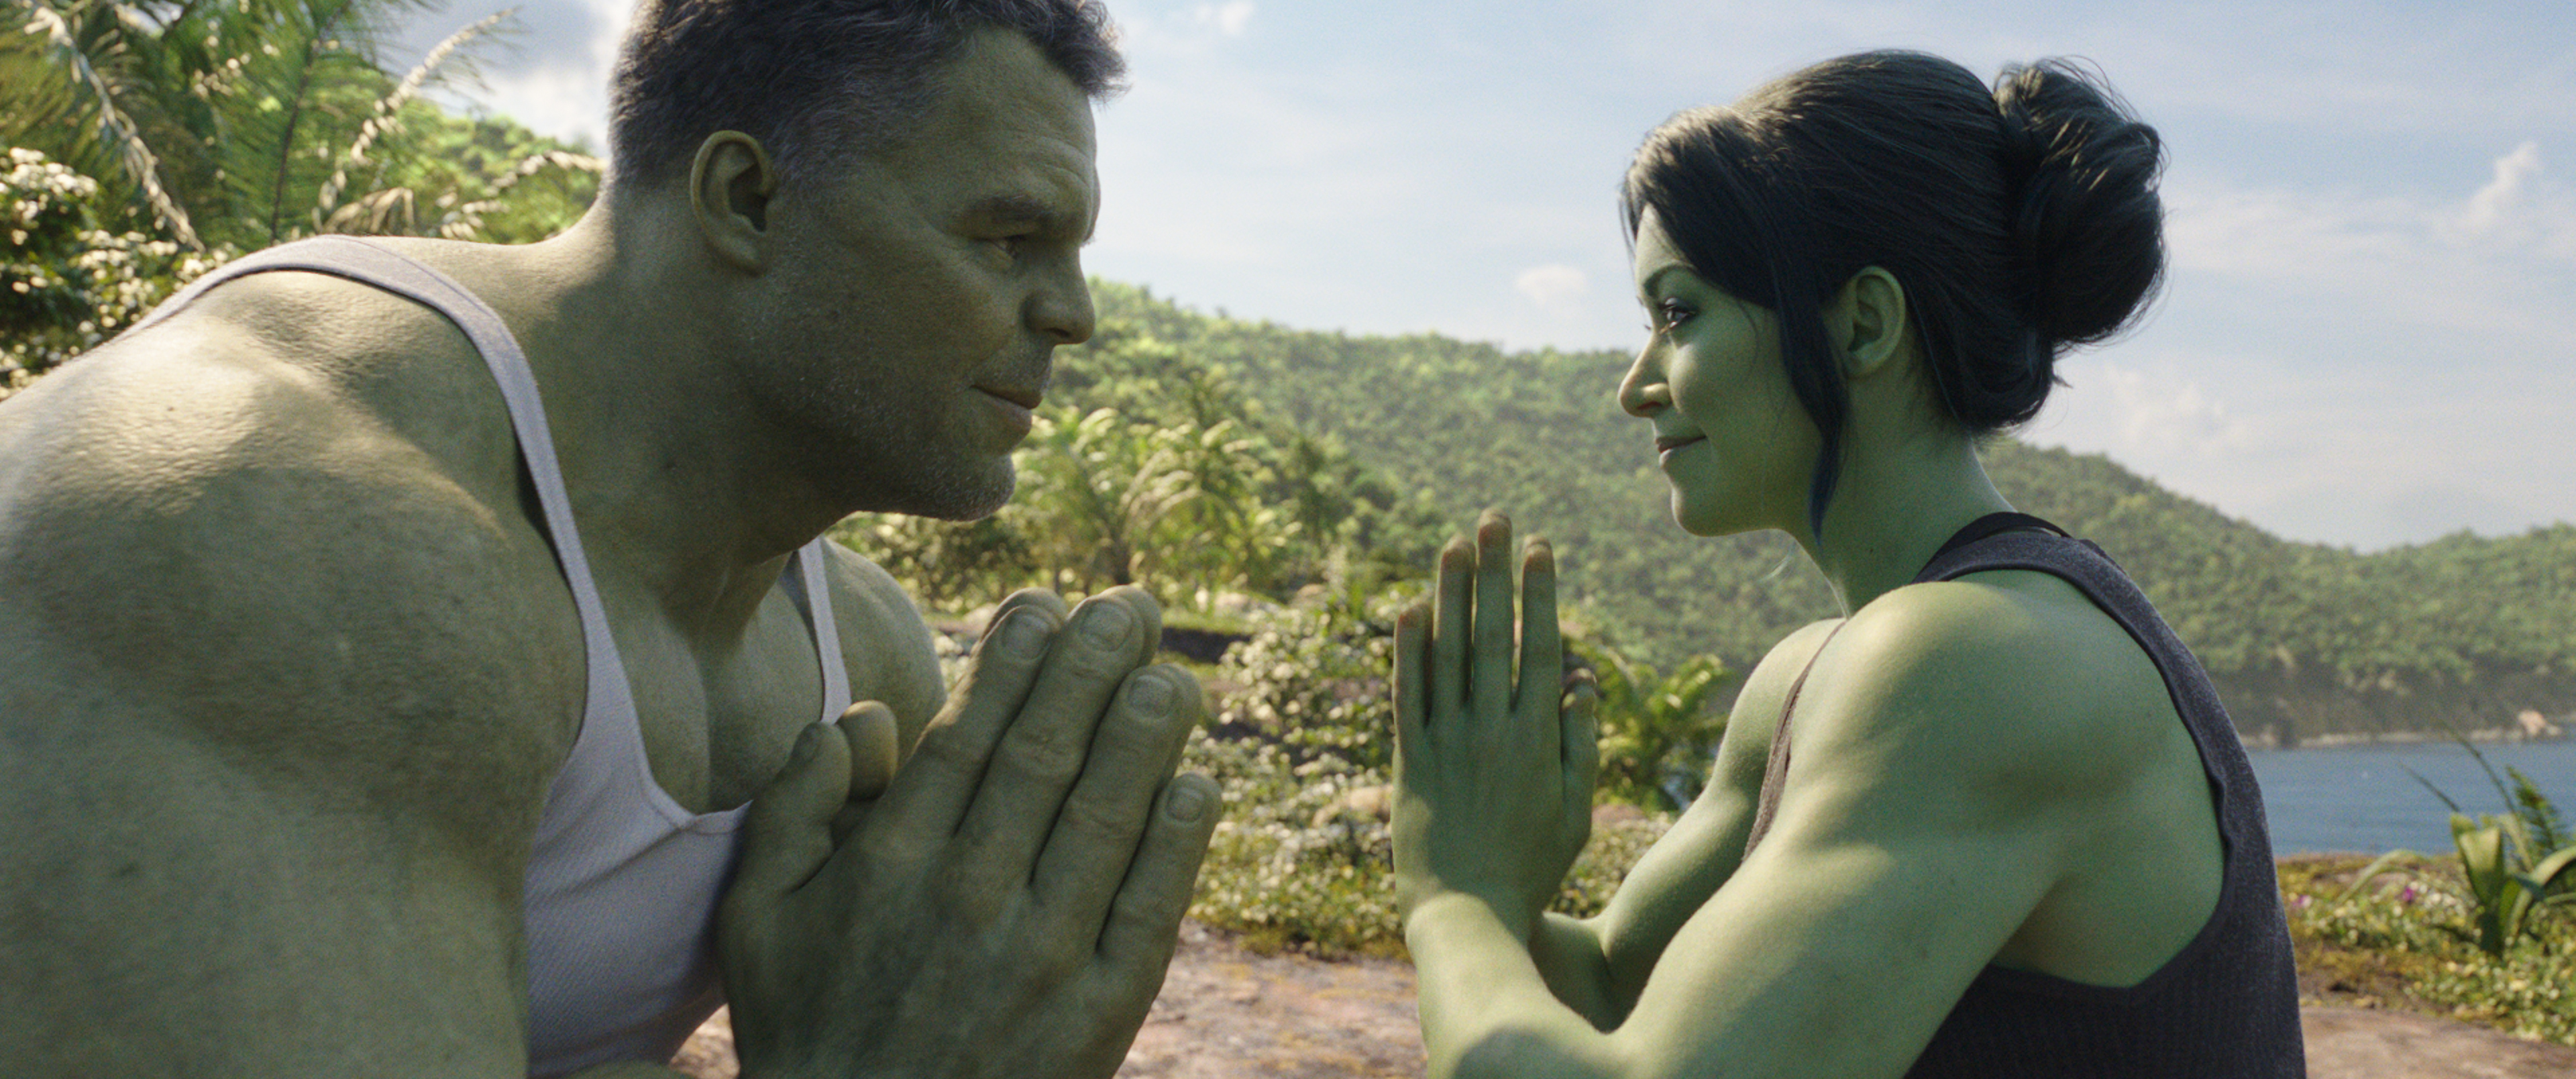 femenino punto empieza la acción Abogados, comedia y citas con mujeres verdes: 'She-Hulk' no es su típica  serie Marvel | Televisión | EL PAÍS